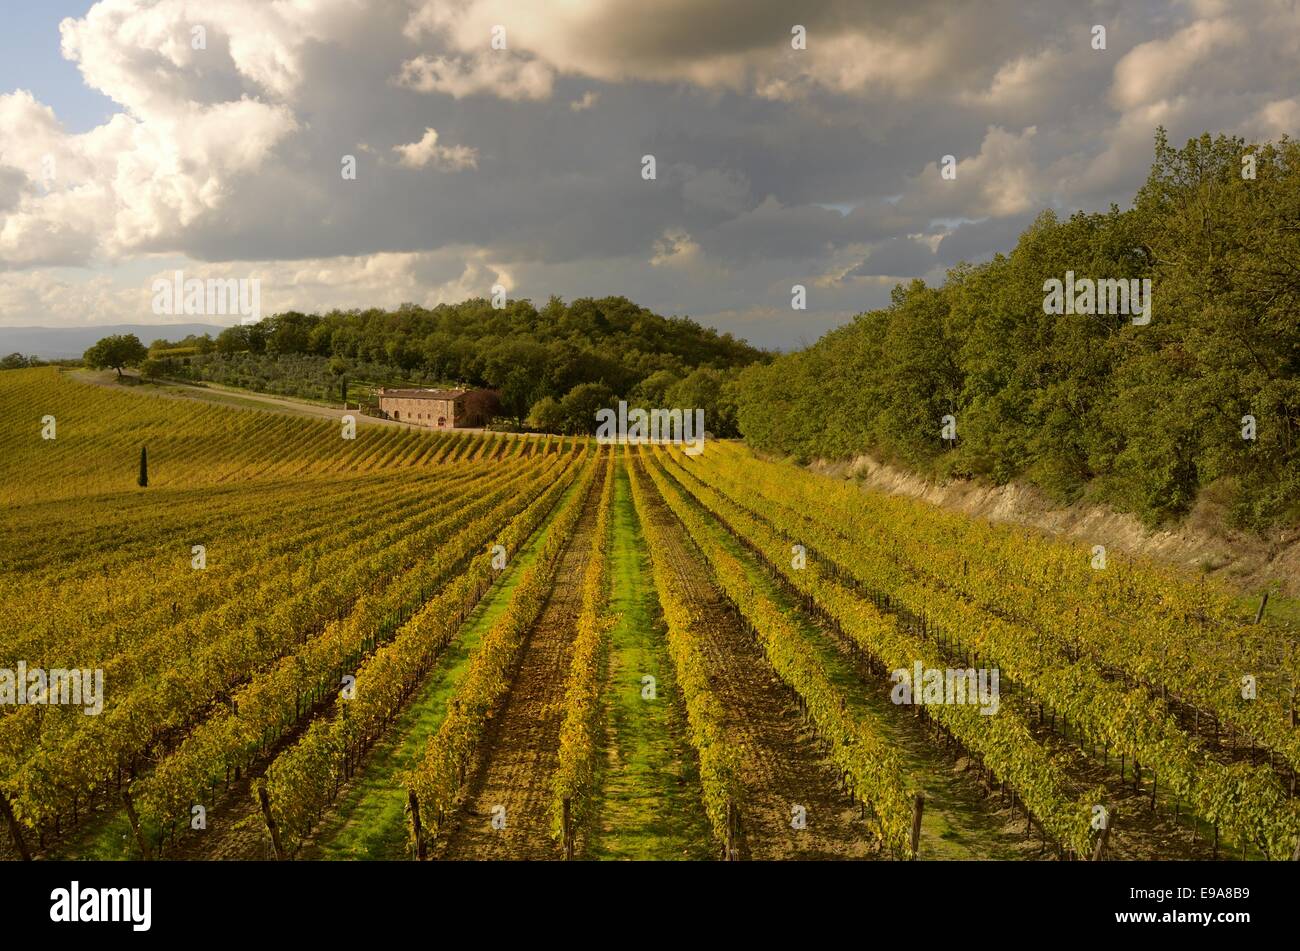 Vineyards in autumn Stock Photo